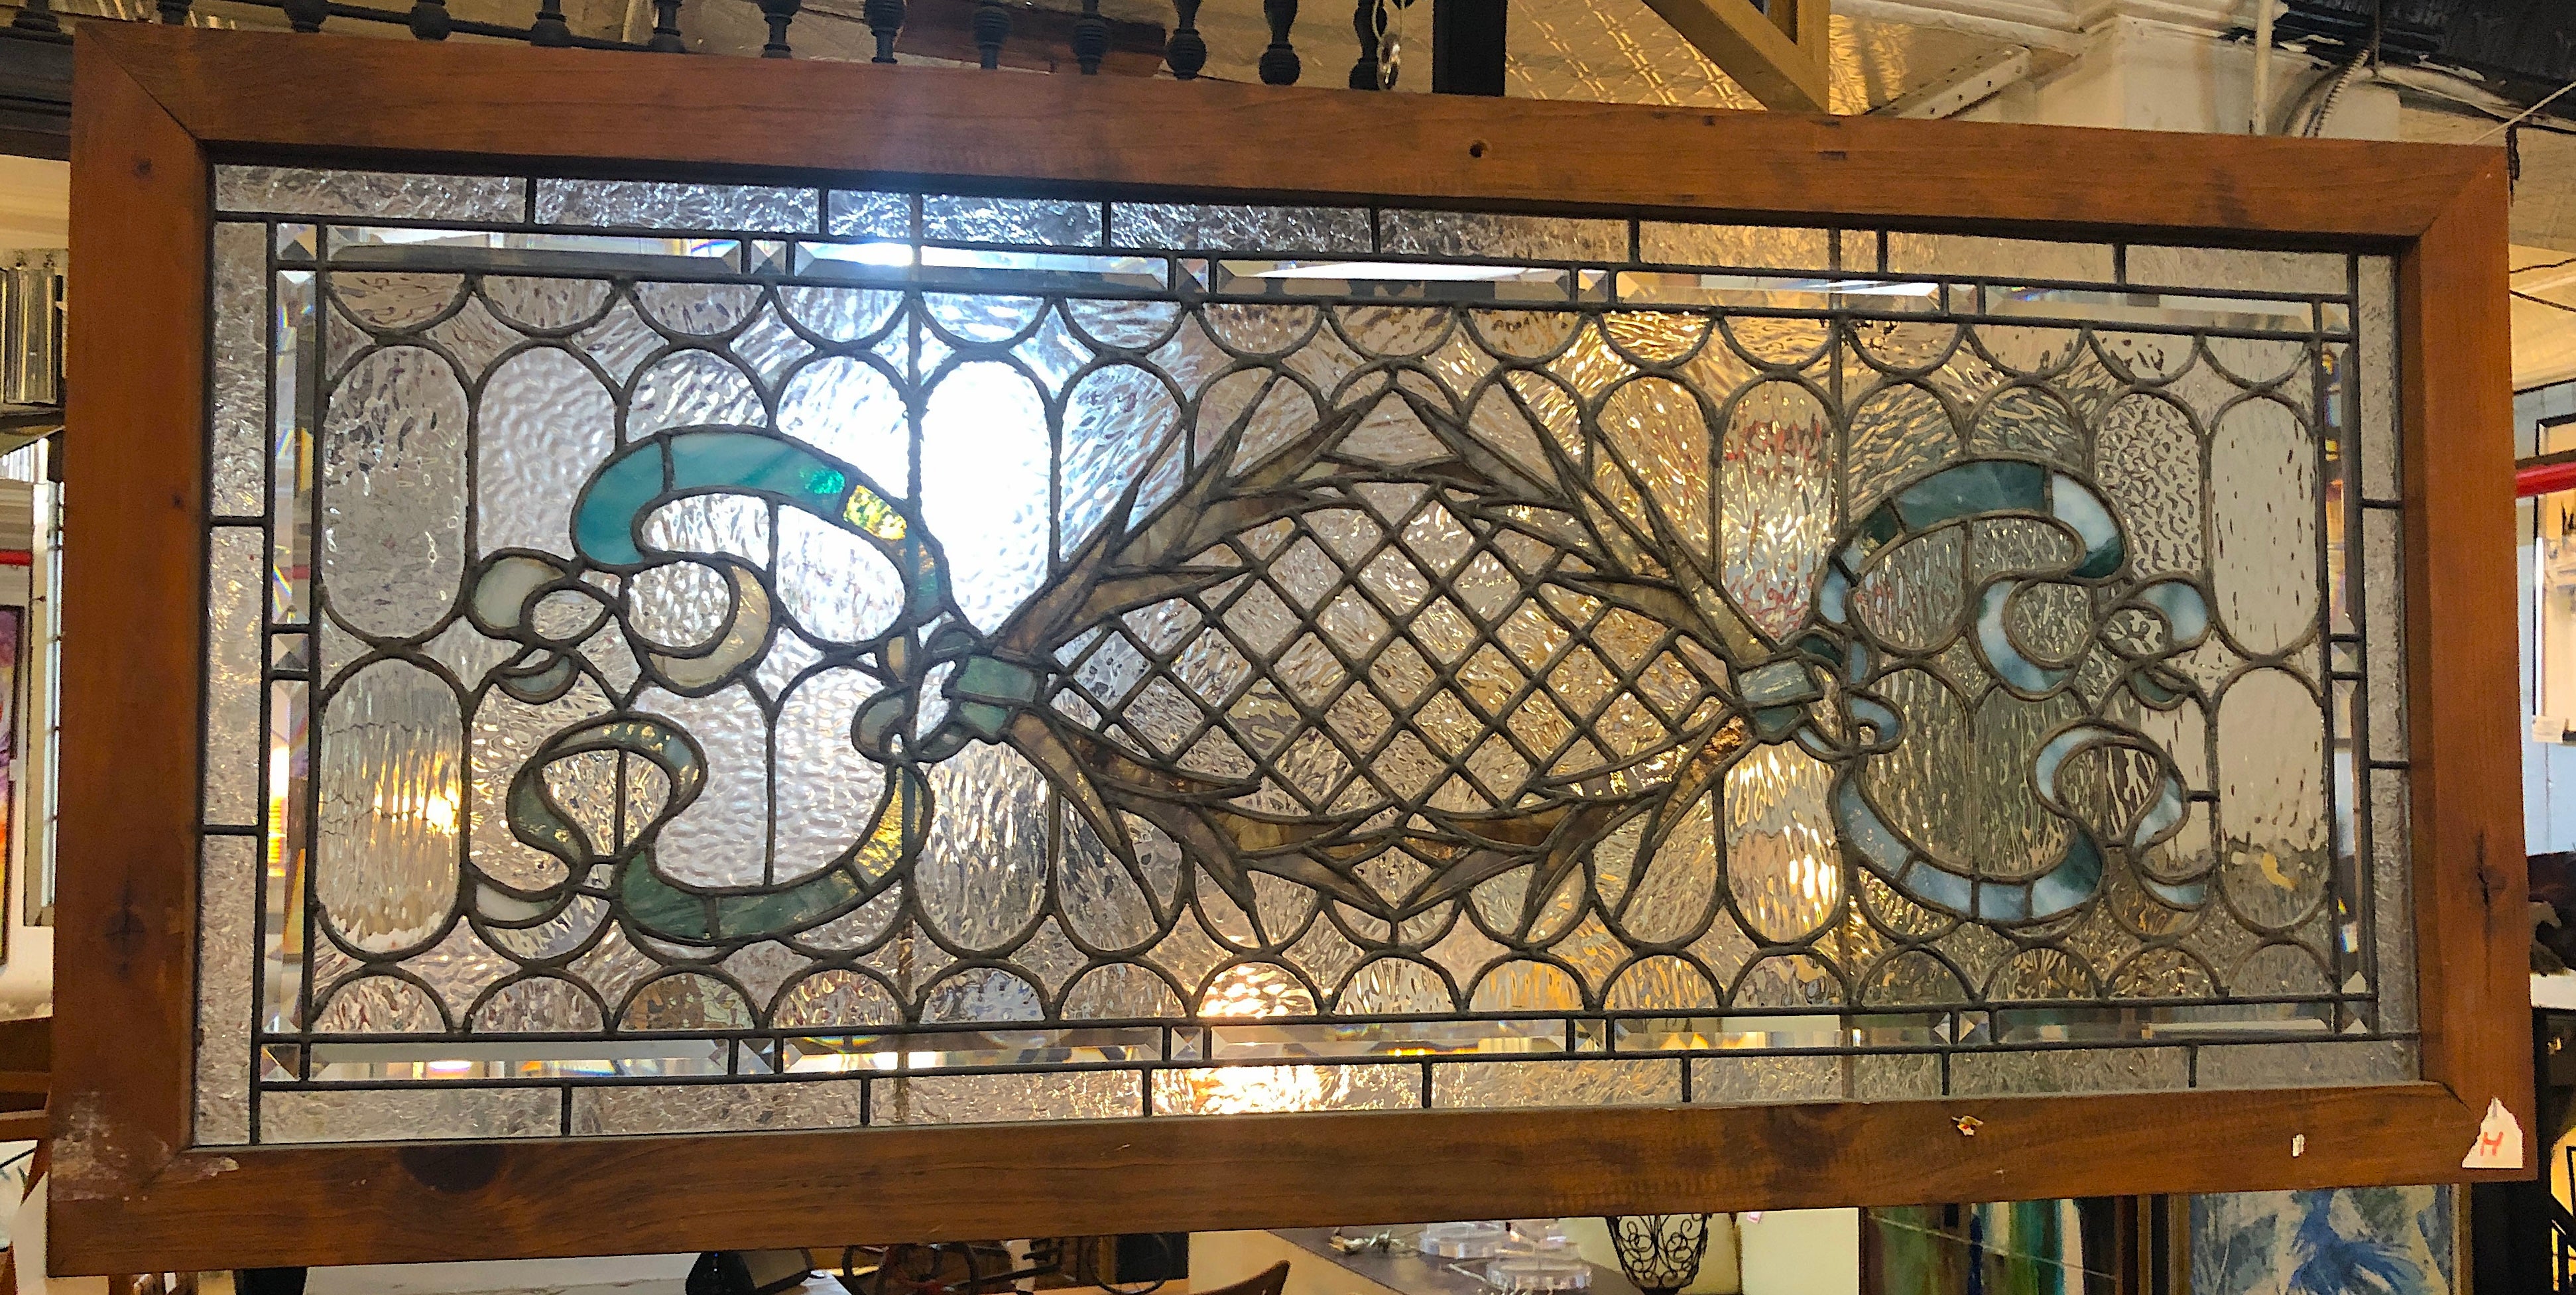 Langes Buntglasfenster aus der Jahrhundertwende. Dekoratives Kranz- und Schleifenmuster.
Derzeit in einem provisorischen Holzrahmen untergebracht - die Gesamtmaße gelten für die Glasmalerei und den Rahmen.
Sitz in NY